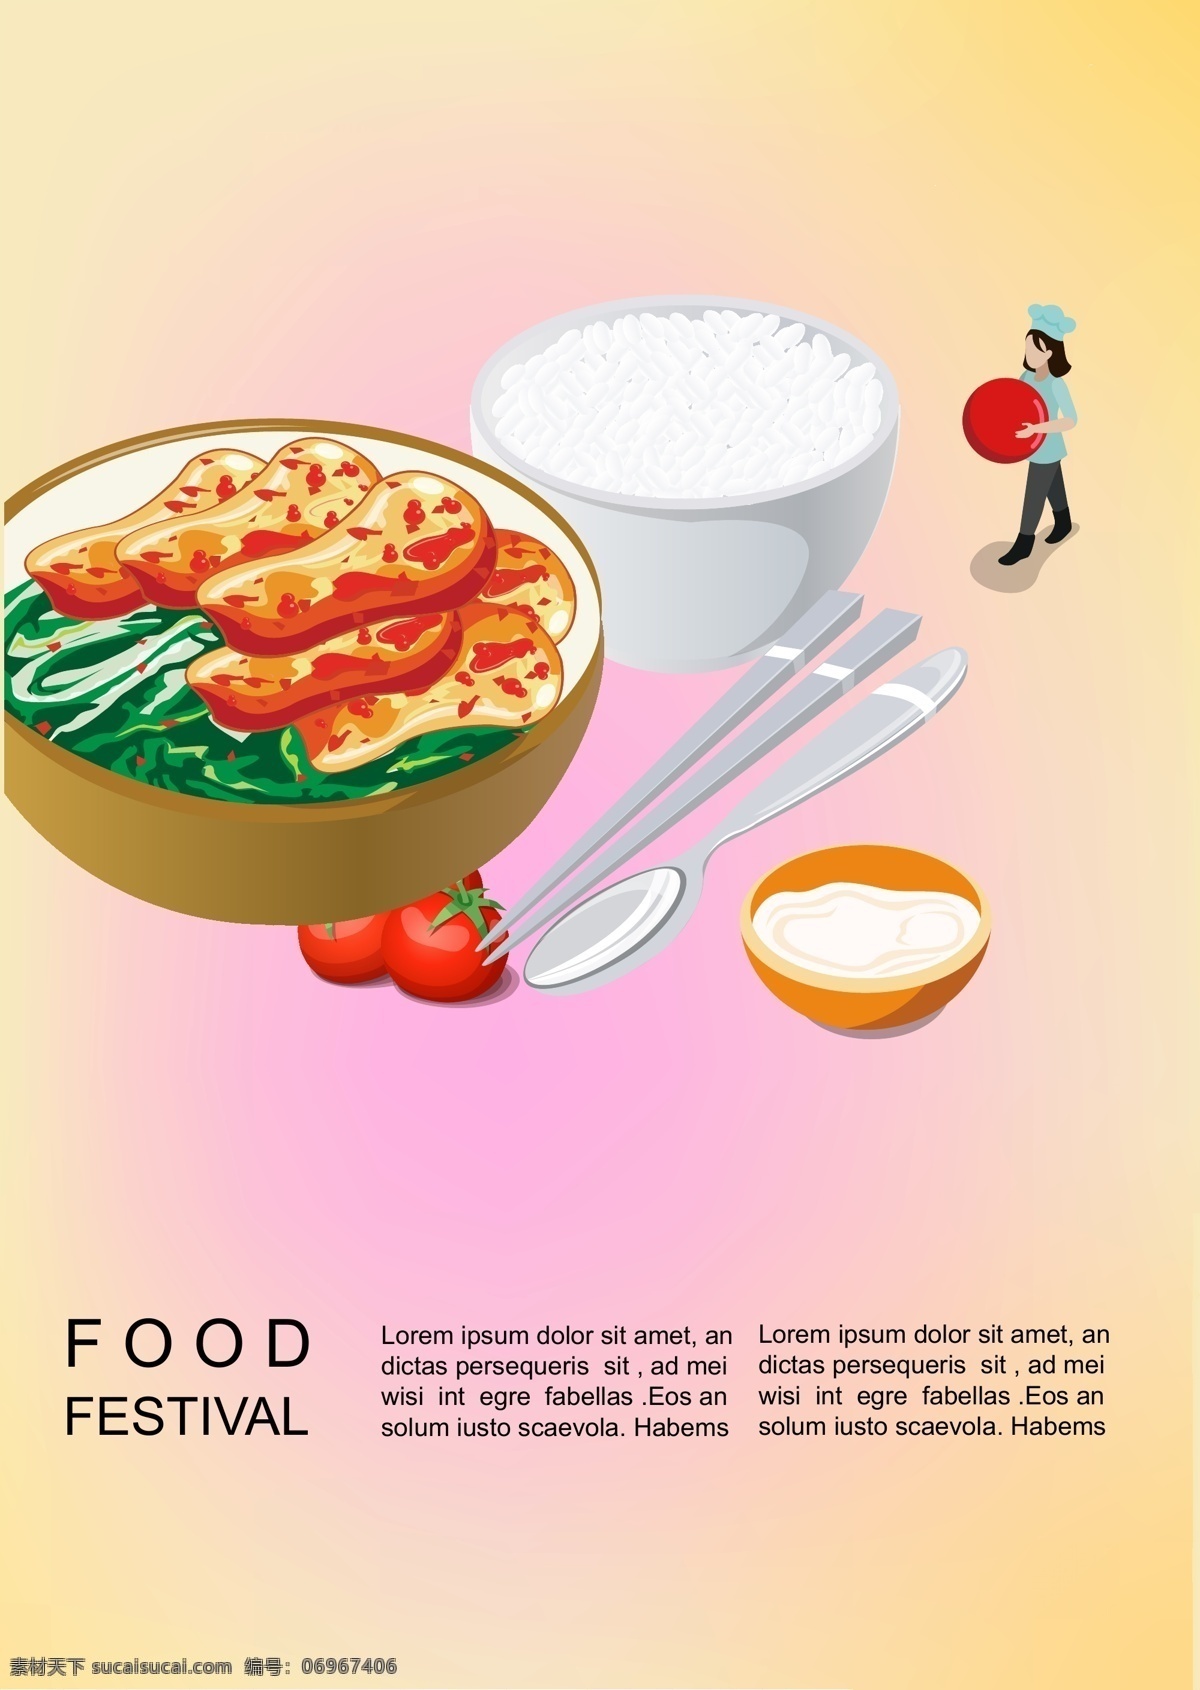 快餐 插图 创意 广告 中国 苗圃 的数量 手工制作 主厨 逐渐 筷子 新鲜 帽 西红柿 海报 韩国风格 米 蔬菜